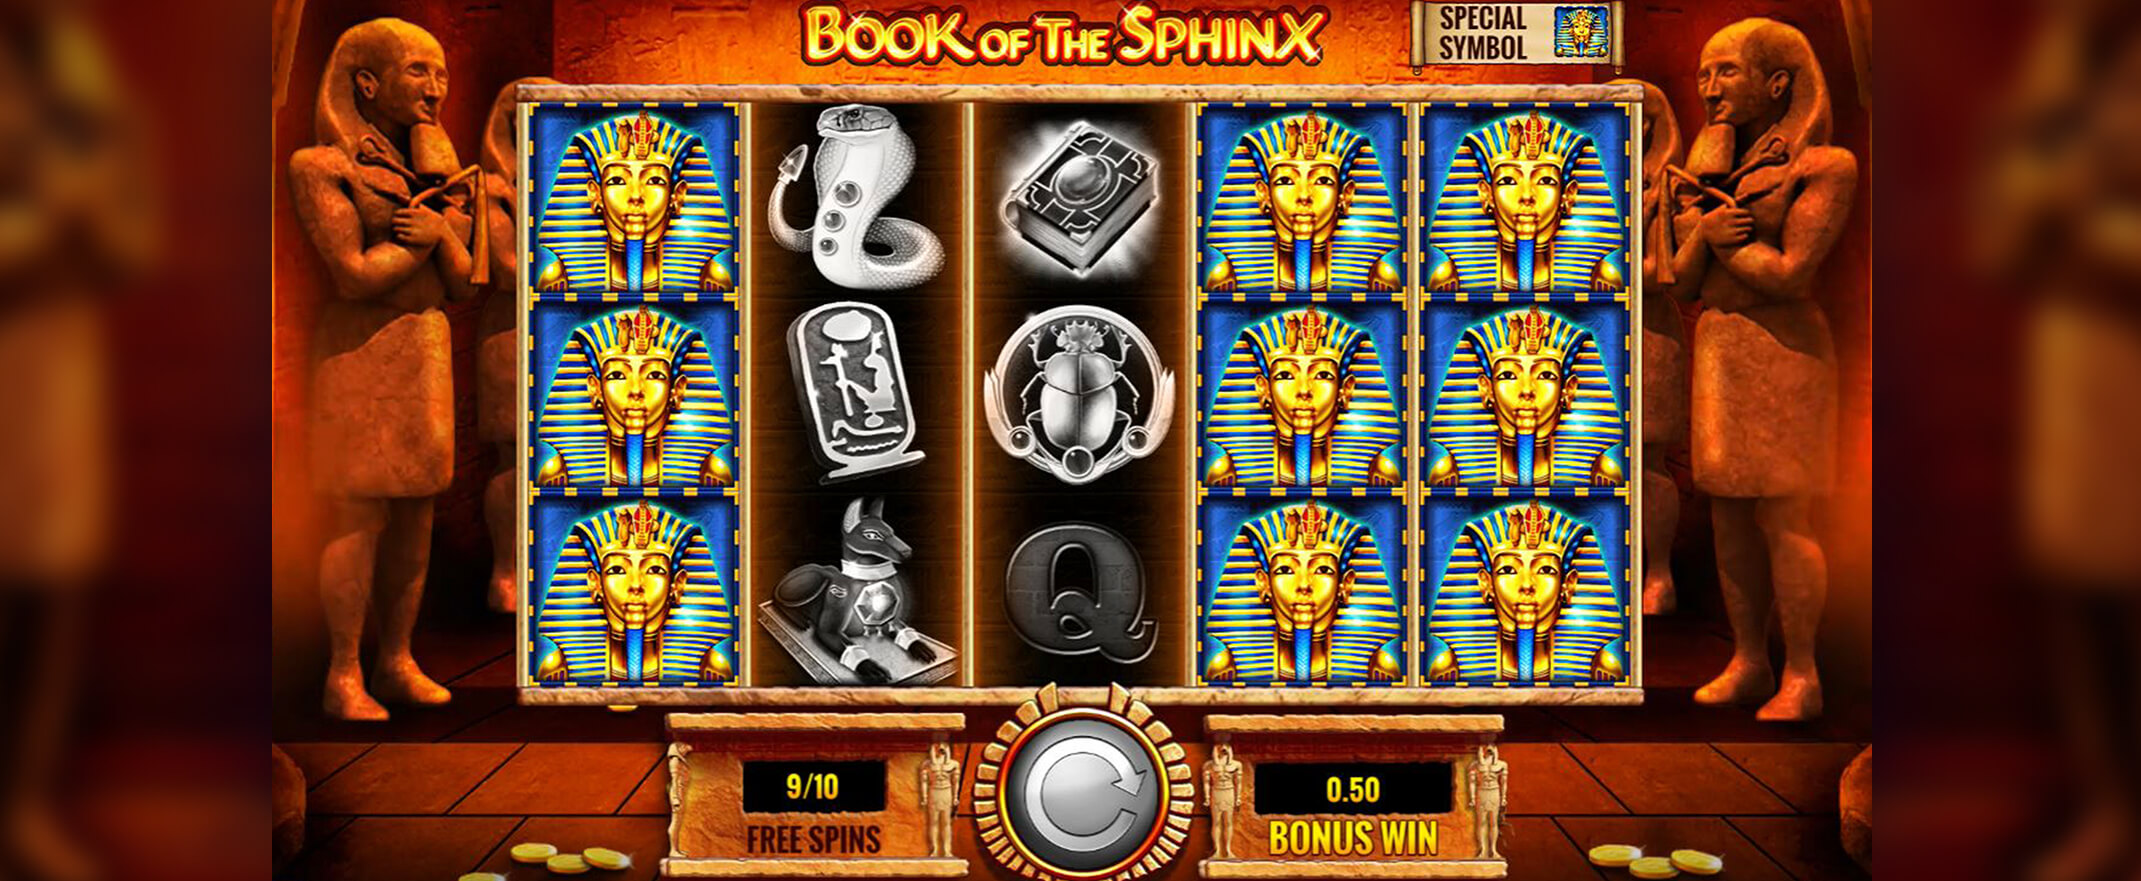 Book of the Sphinx Spielautomaten spielen